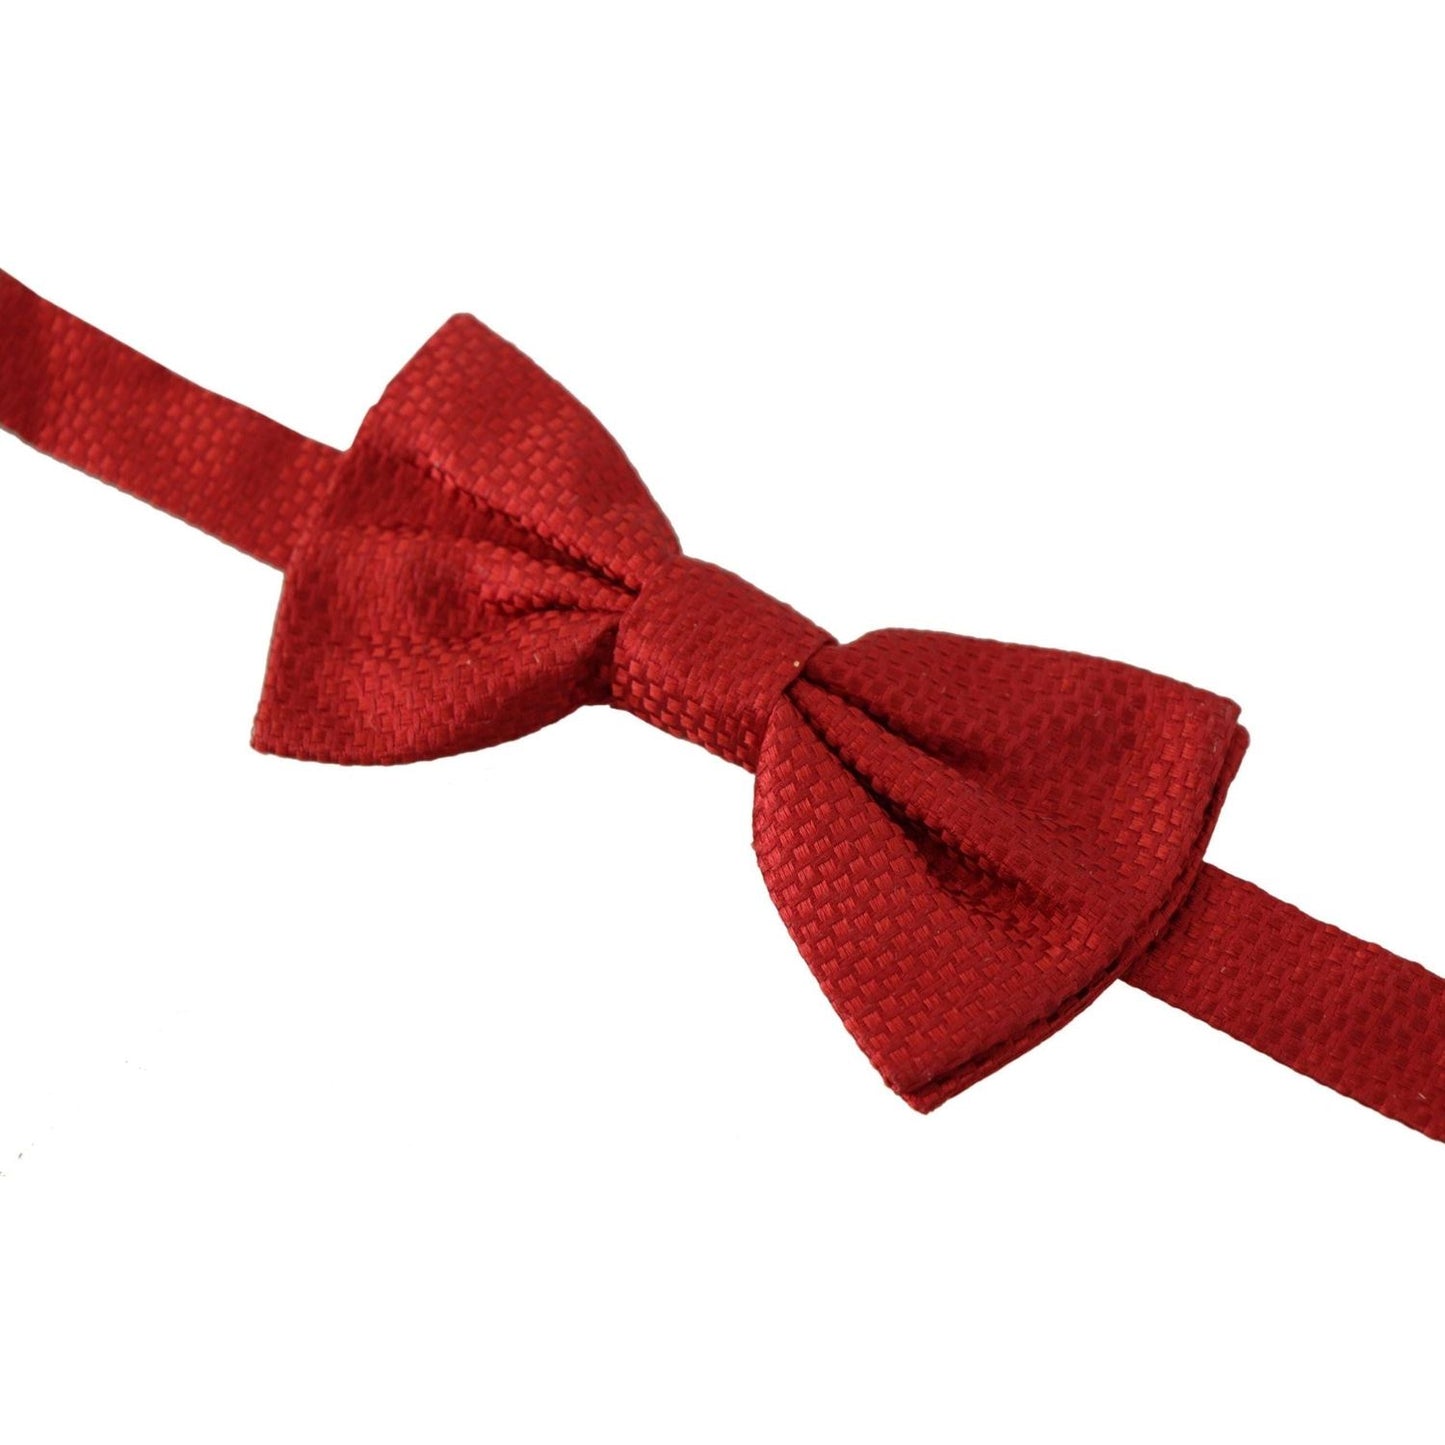 Dolce & Gabbana Elegant Red Silk Bow Tie red-100-silk-slim-adjustable-neck-papillon-tie-1